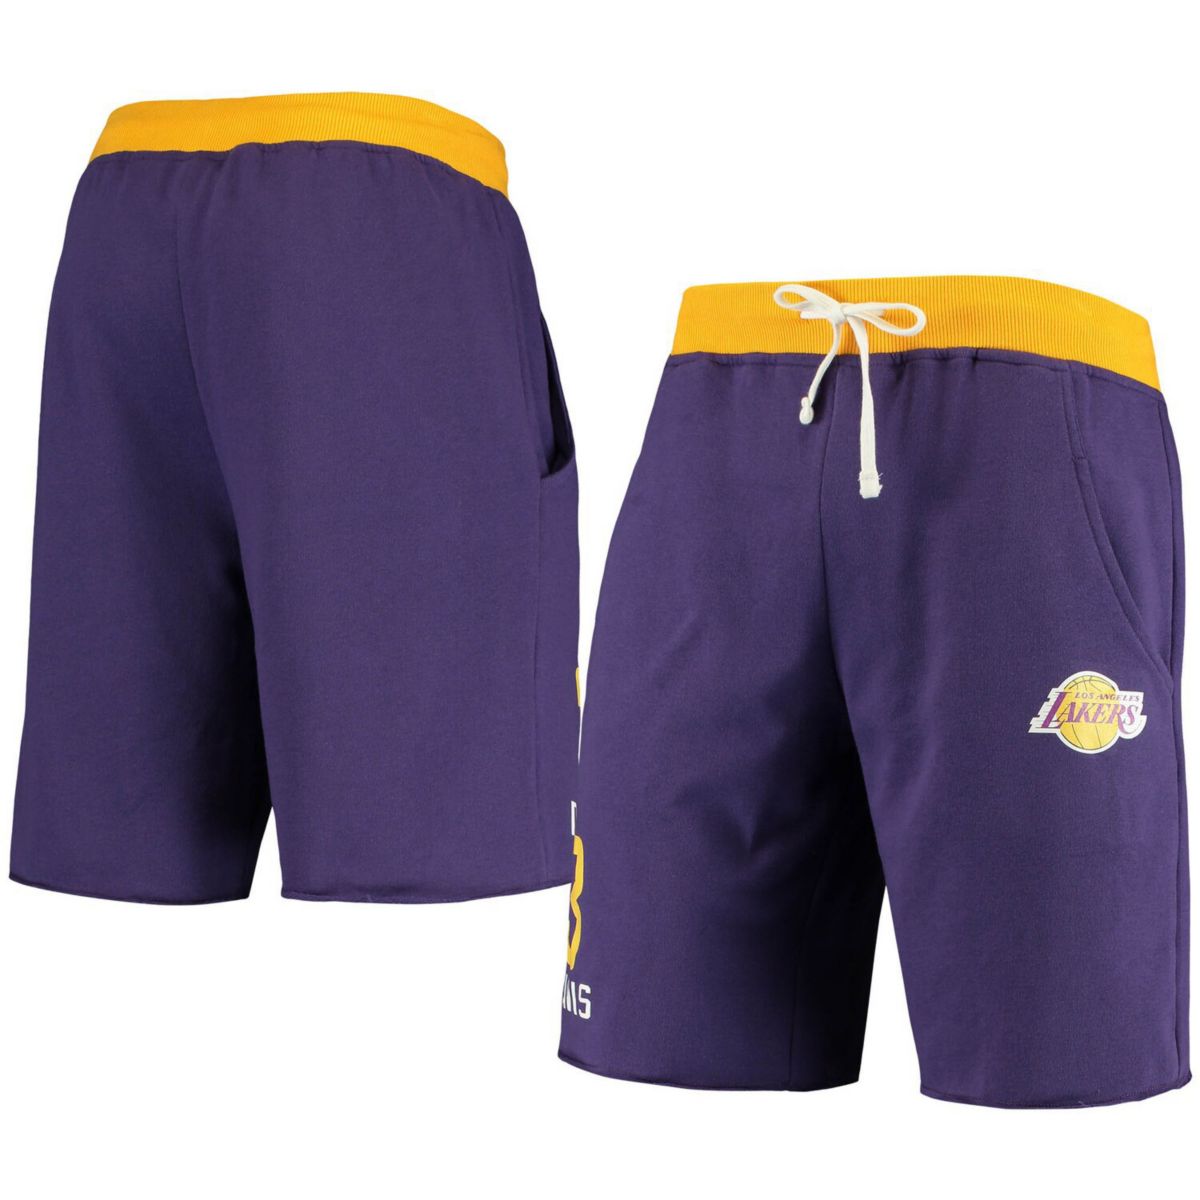 Шорты какое число. Lakers шорты фиолетовые. Шорты мужские Lakers фиолетовые. Оригинальные шорты Lakers. Шорты Lakers мужские.